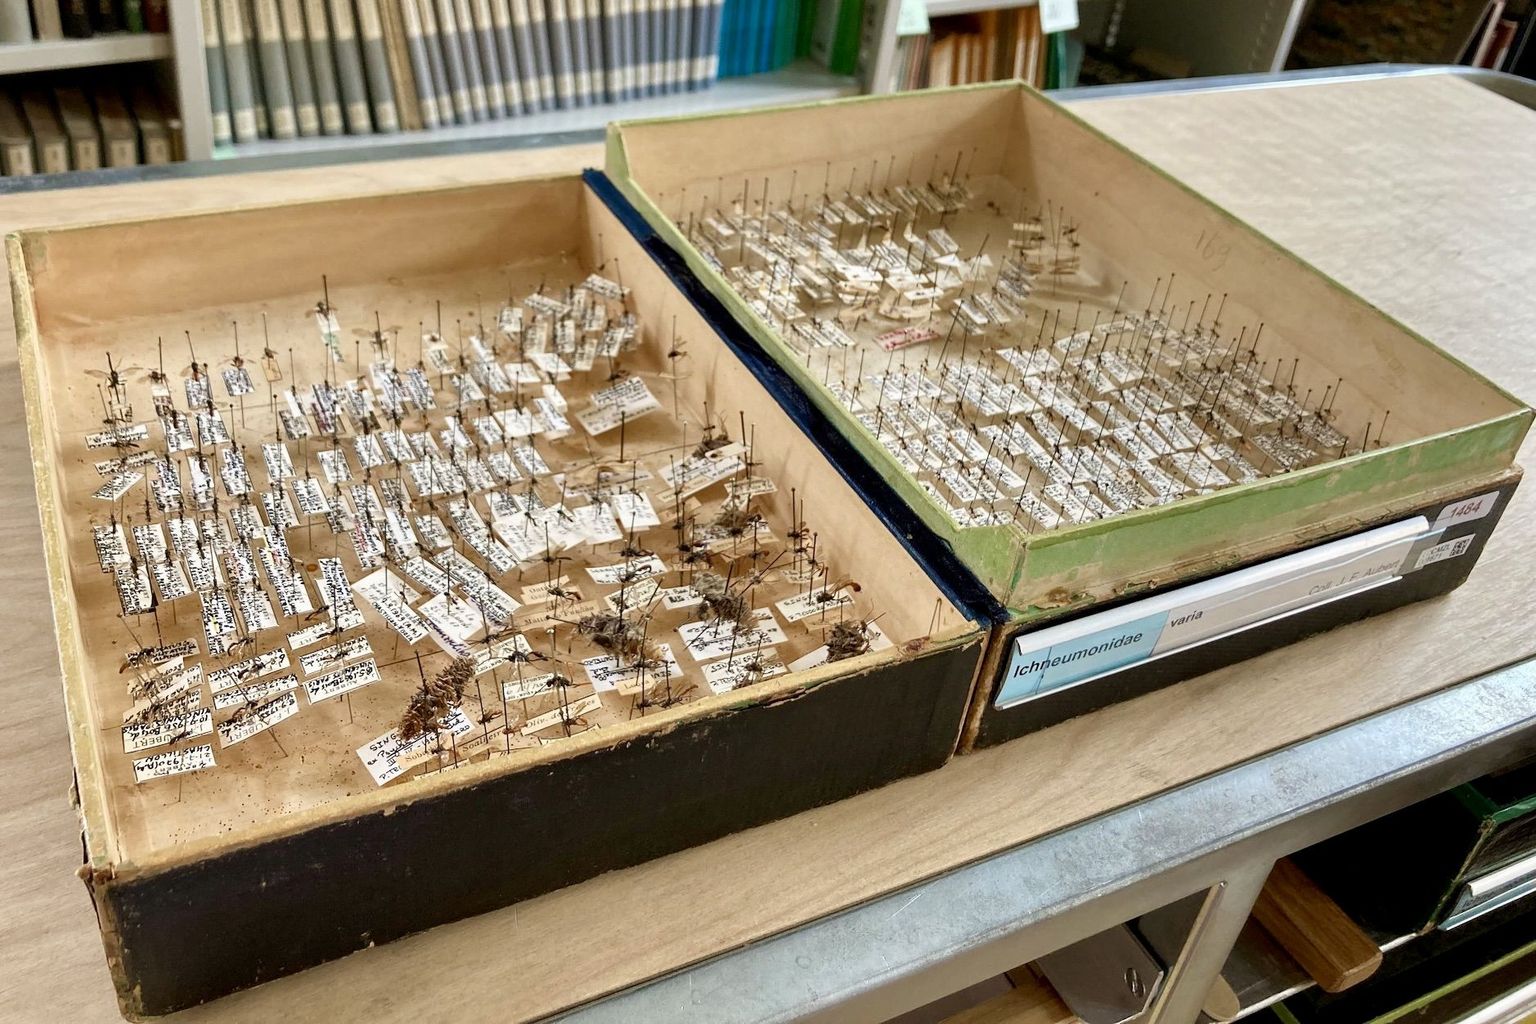 Les collections entomologiques suisses abritent de nombreuses espèces d’insectes encore inconnues.